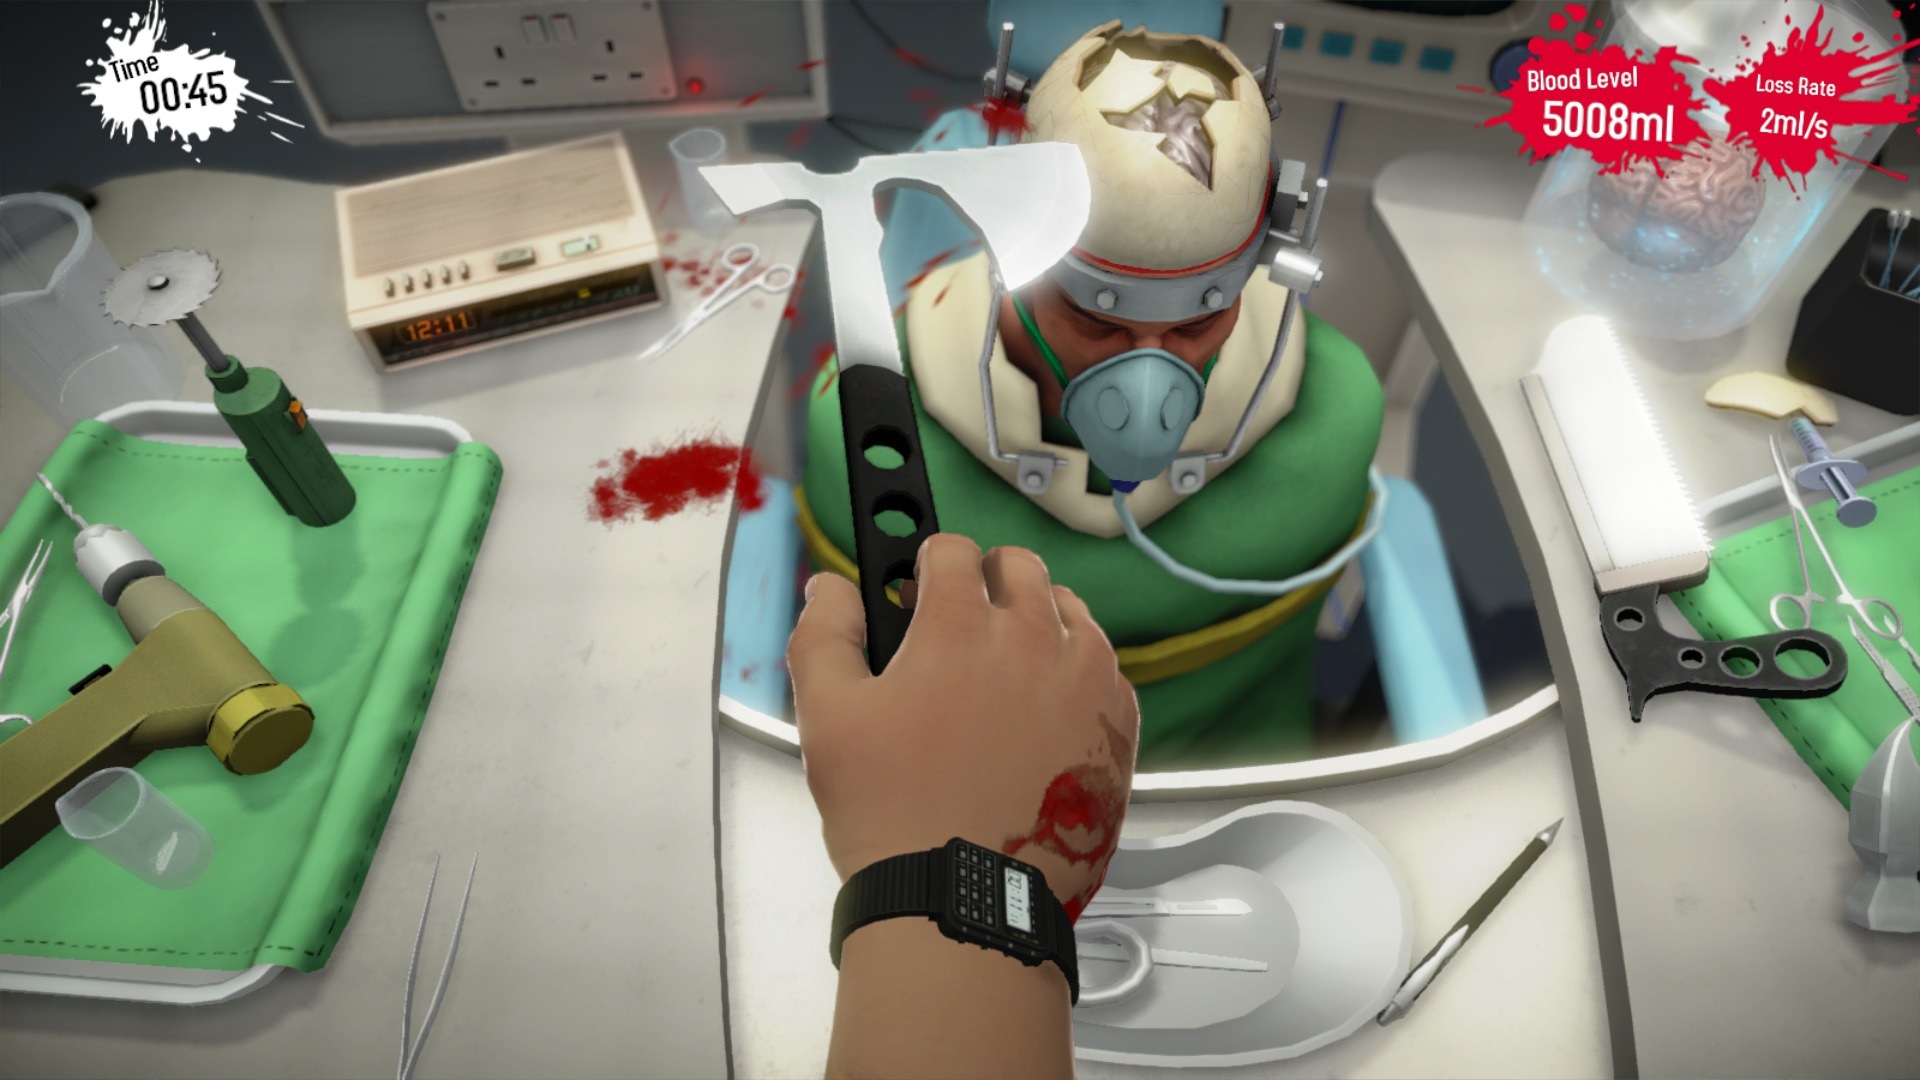 Surgeon Simulator: Anniversary Edition  Obas medzi chirurgom a drevorubaom nie je vek rozdiel.